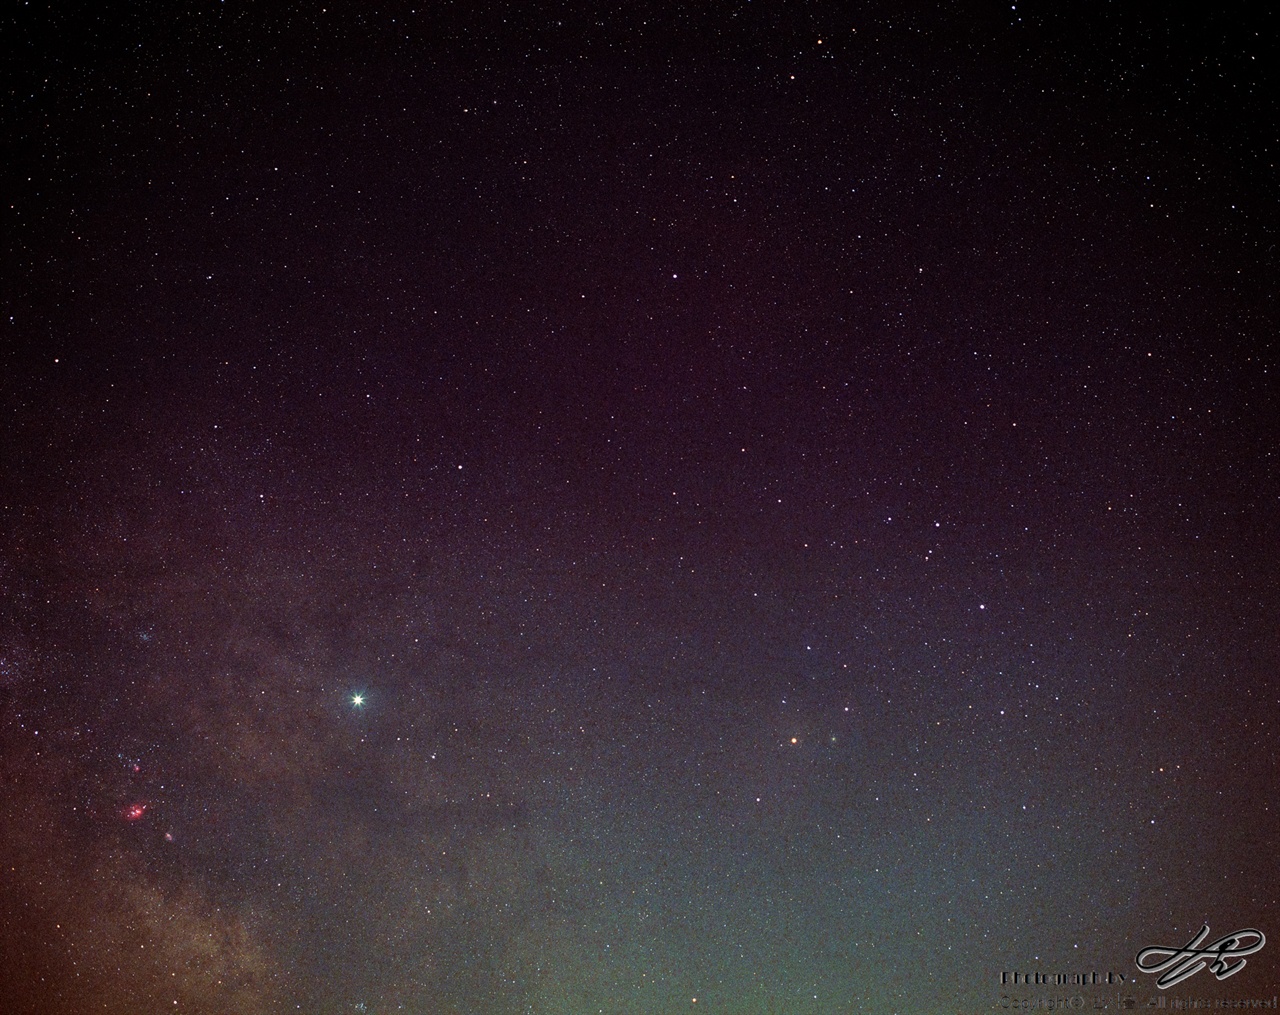 은하수, 목성, 전갈자리 (Portra800/F4/노출 20분)왼쪽 아래의 붉은 부분은 궁수자리 부근의 성운이다. 파랗게 빛나는 것은 별이 아니라 목성이다. 오른편으로는 전갈자리.